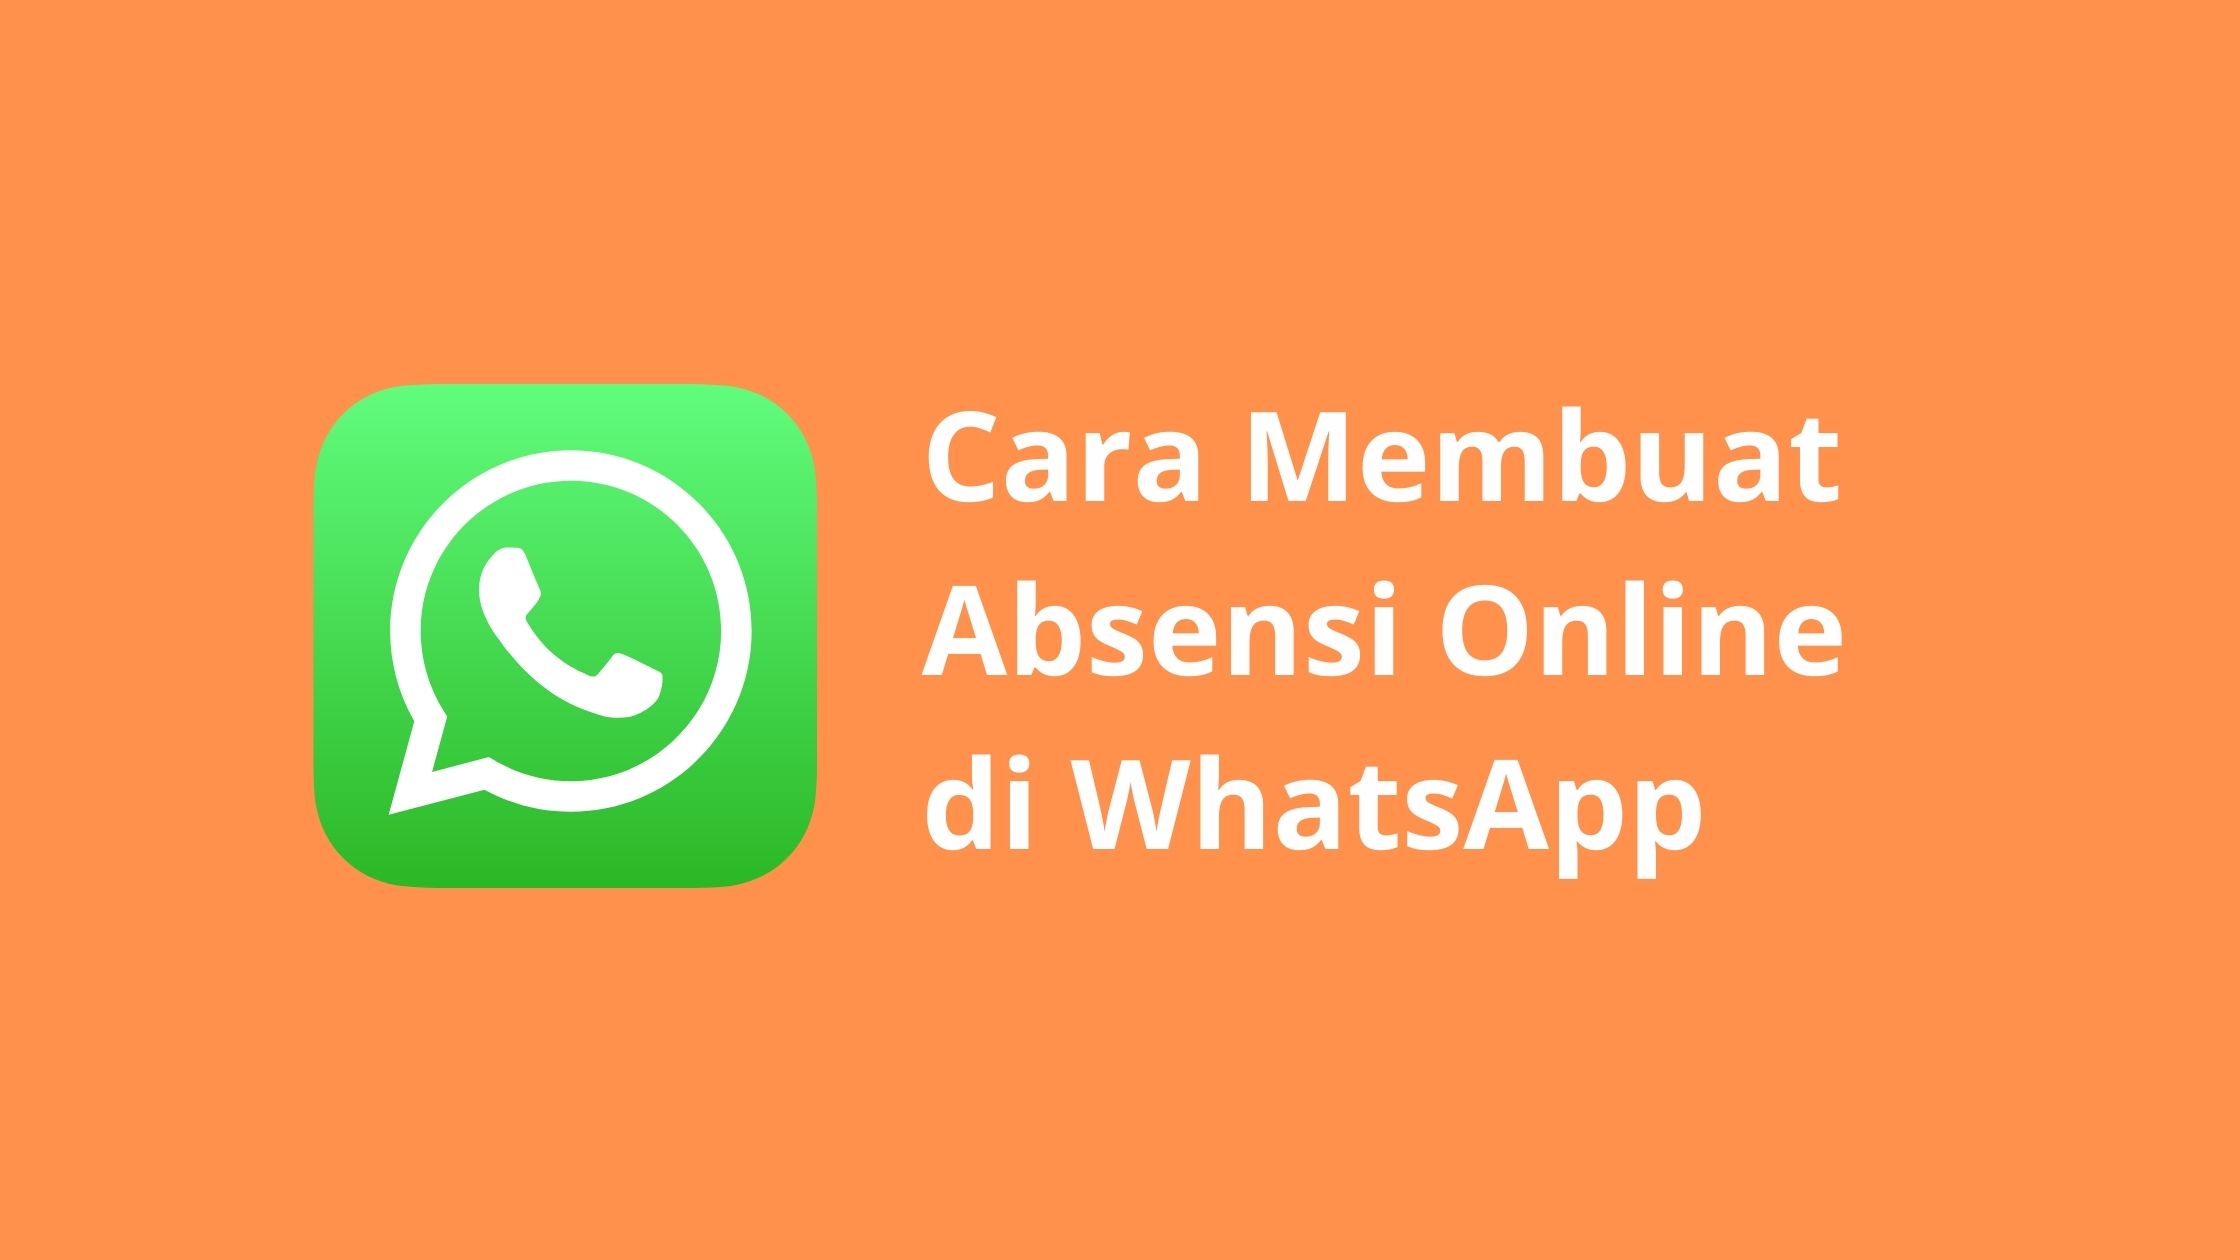 Cara membuat absensi online di Whatsapp